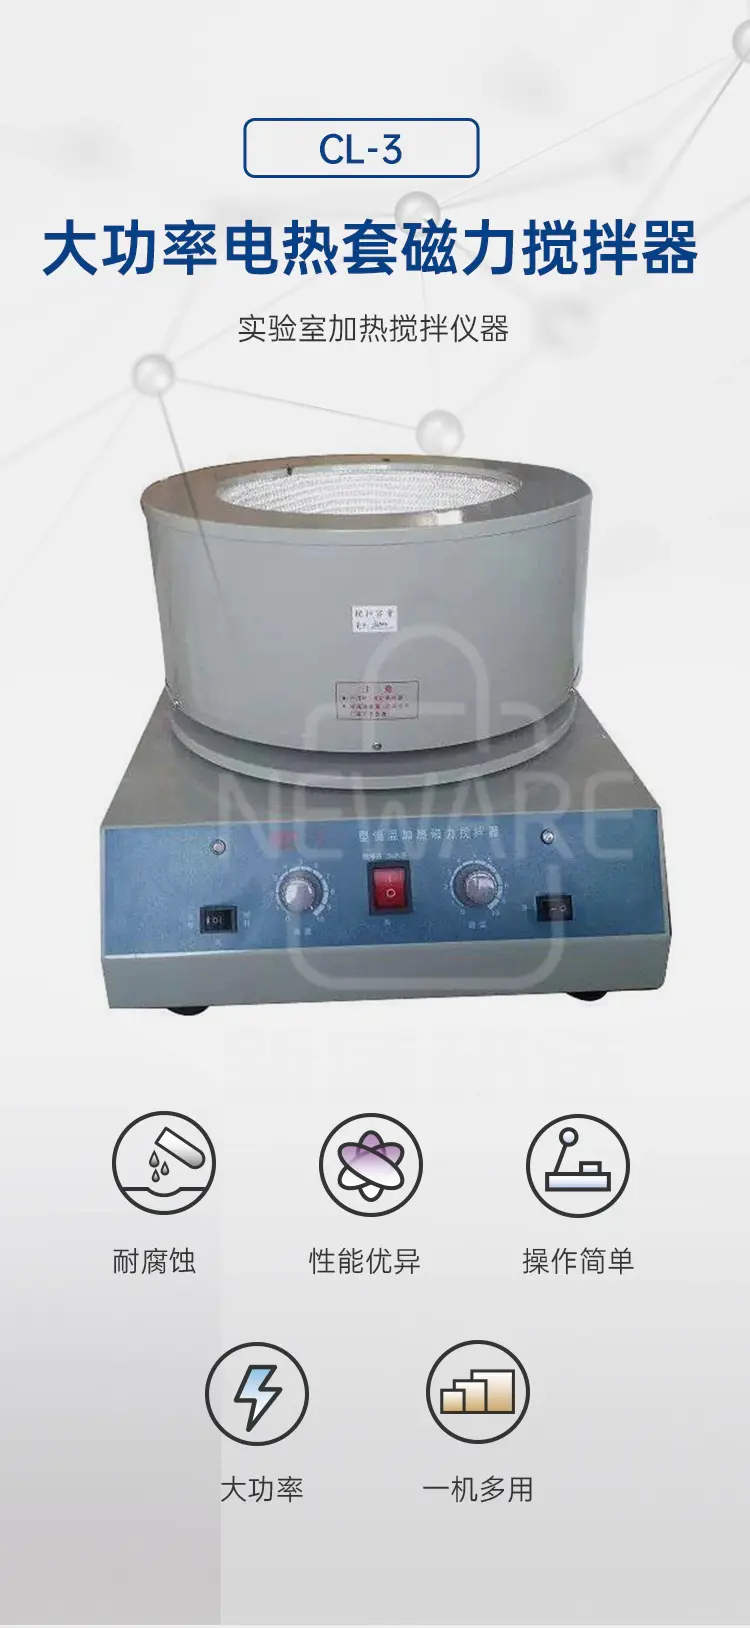 大功率电热套磁力搅拌器CL-3商品介绍1